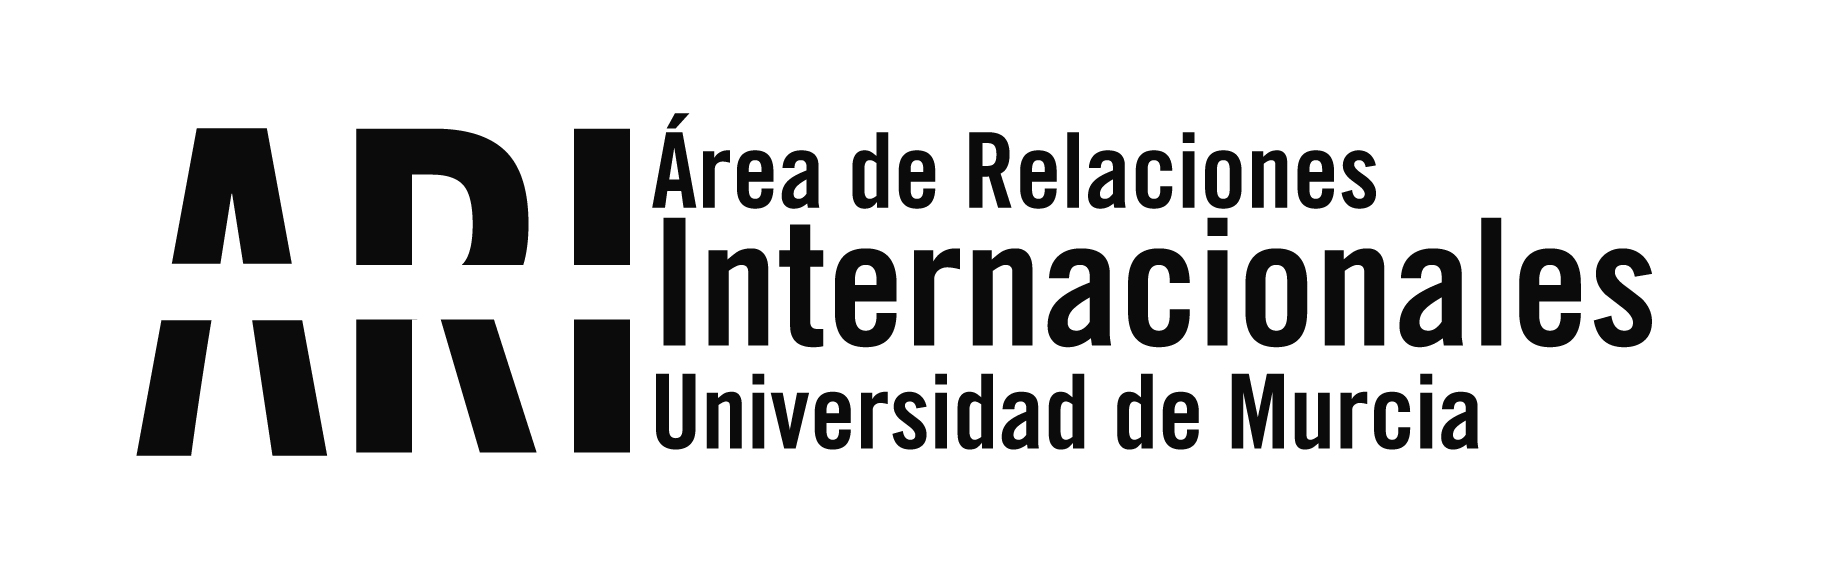 IX Concurso Relato Corto C.C. Thader - Universidad de Murcia dotado con 10.000 euros en premios - Área de Relaciones Internacionales